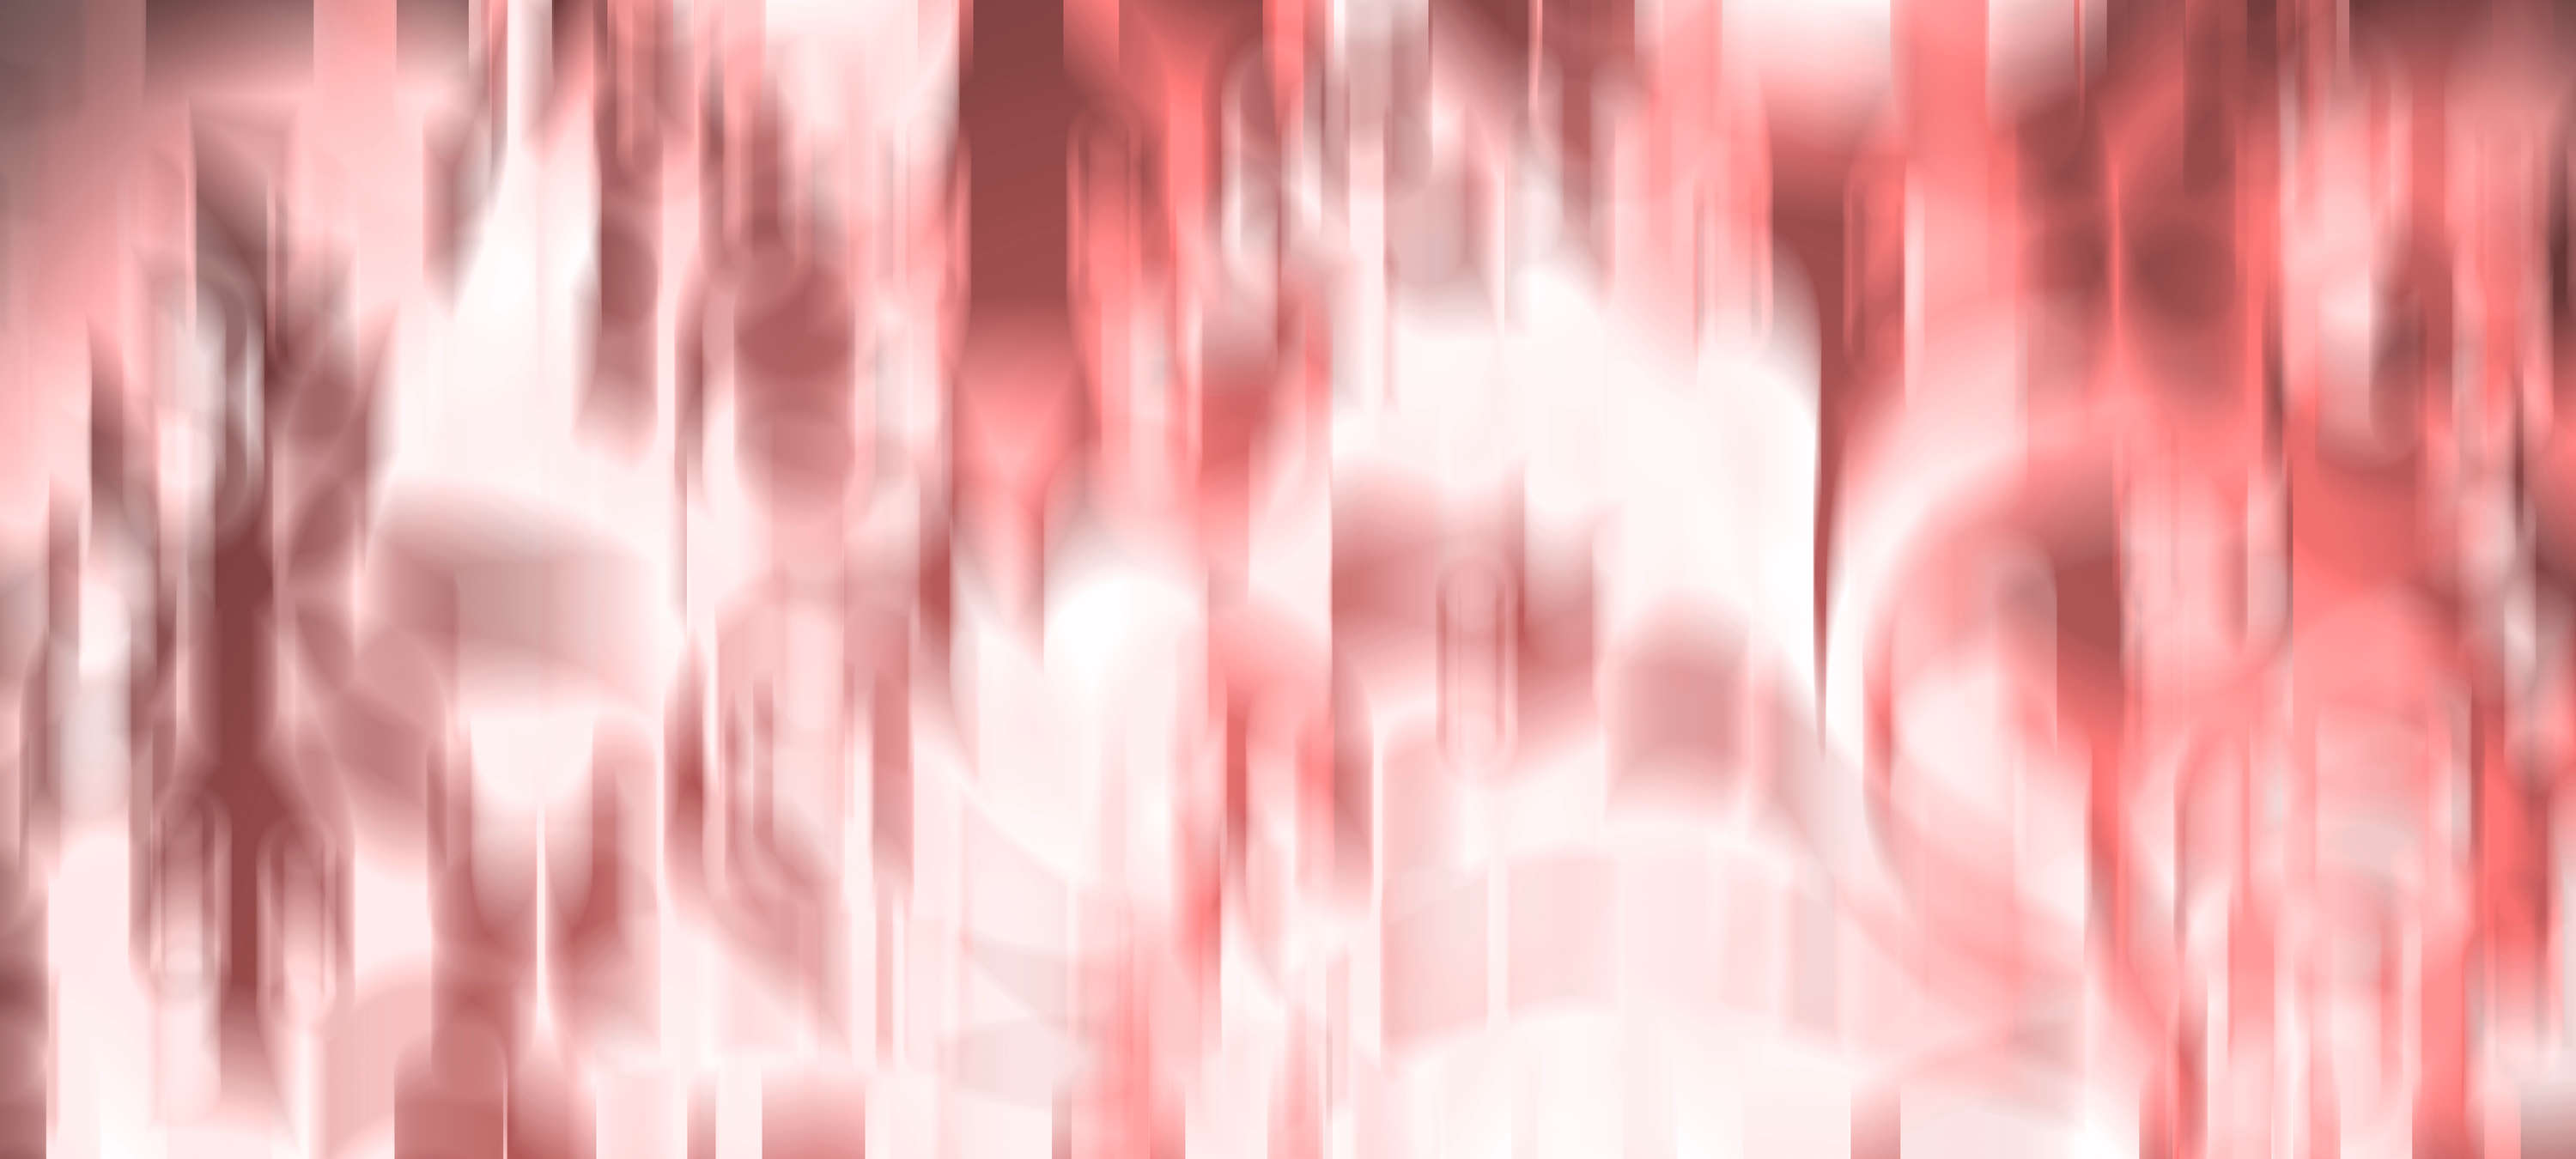             Fotomurali moderno astratto e sfocato - Rosa, rosso, bianco
        